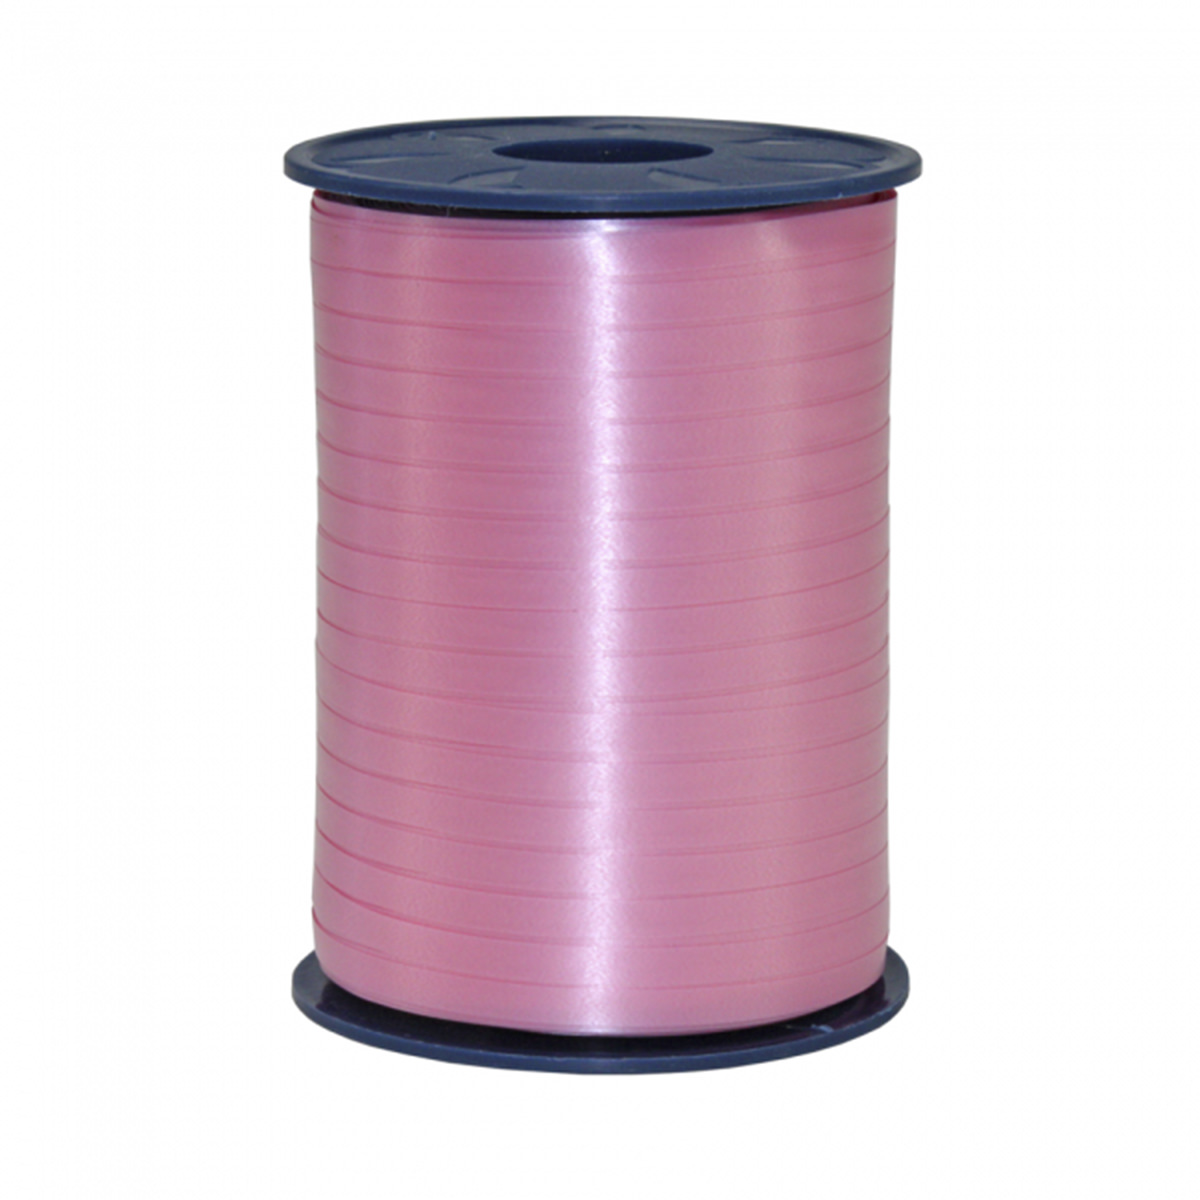 Ballongsnöre, rosa 500 m x 5mmproduktzoombild #1